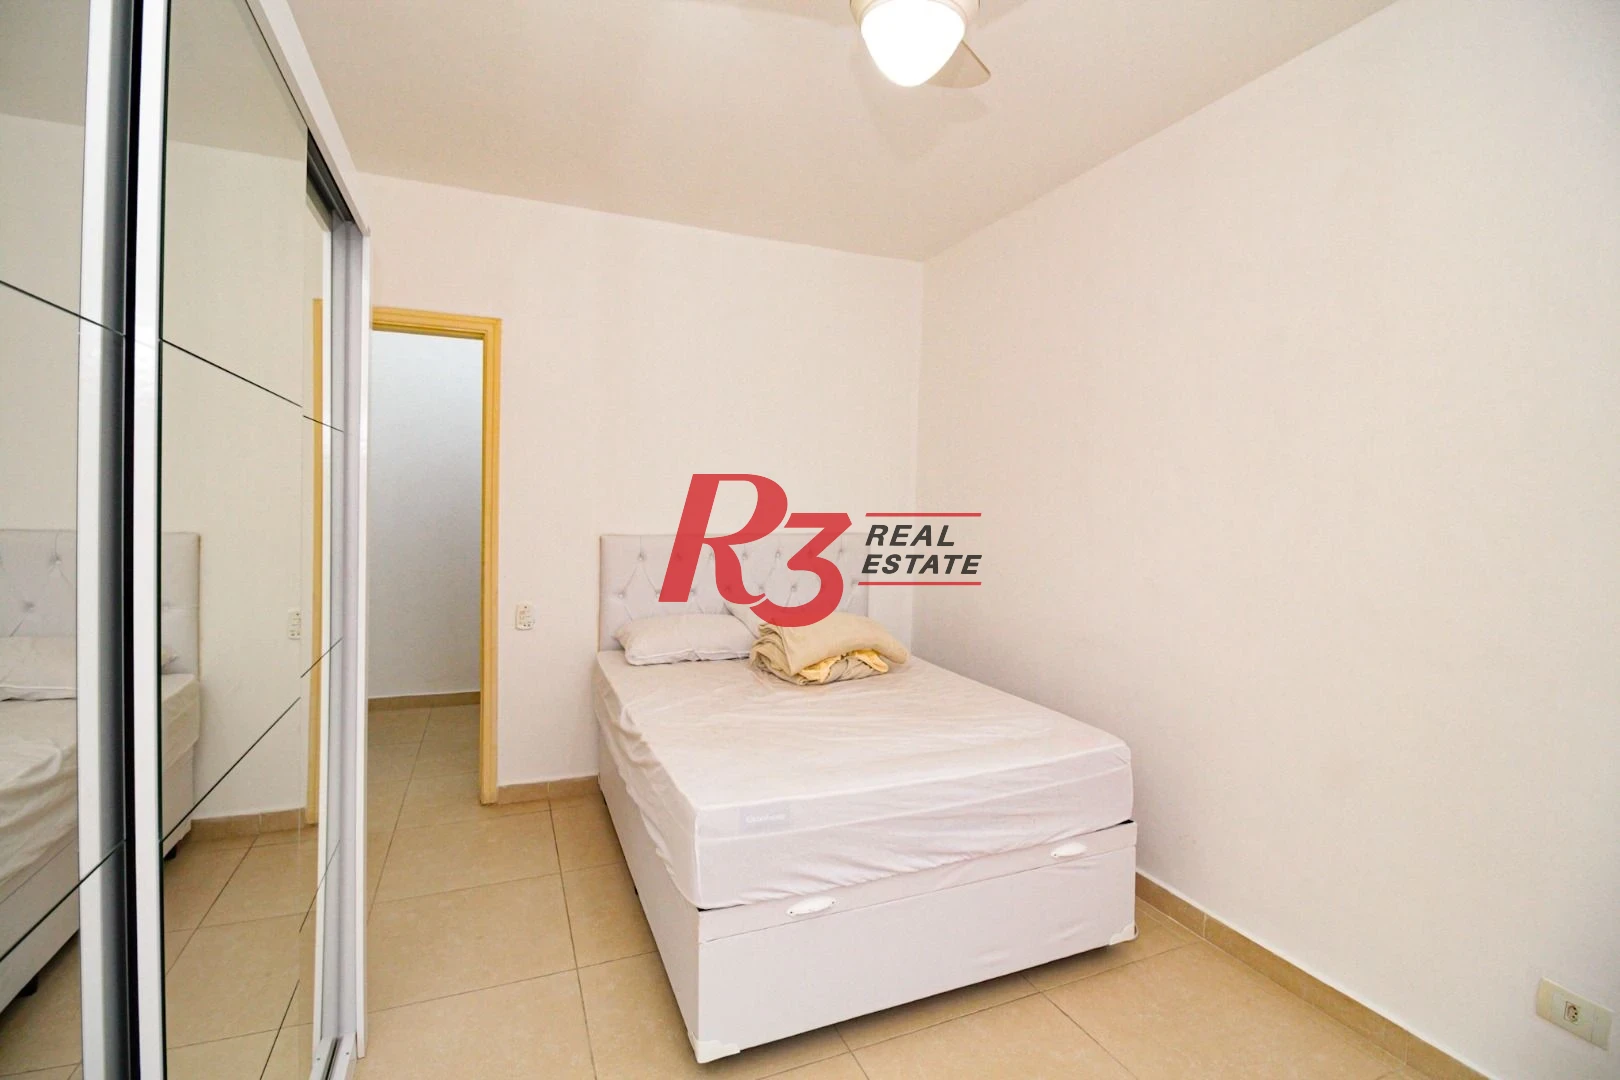 Apartamento à venda, 52 m² por R$ 300.000,00 - Centro - São Vicente/SP